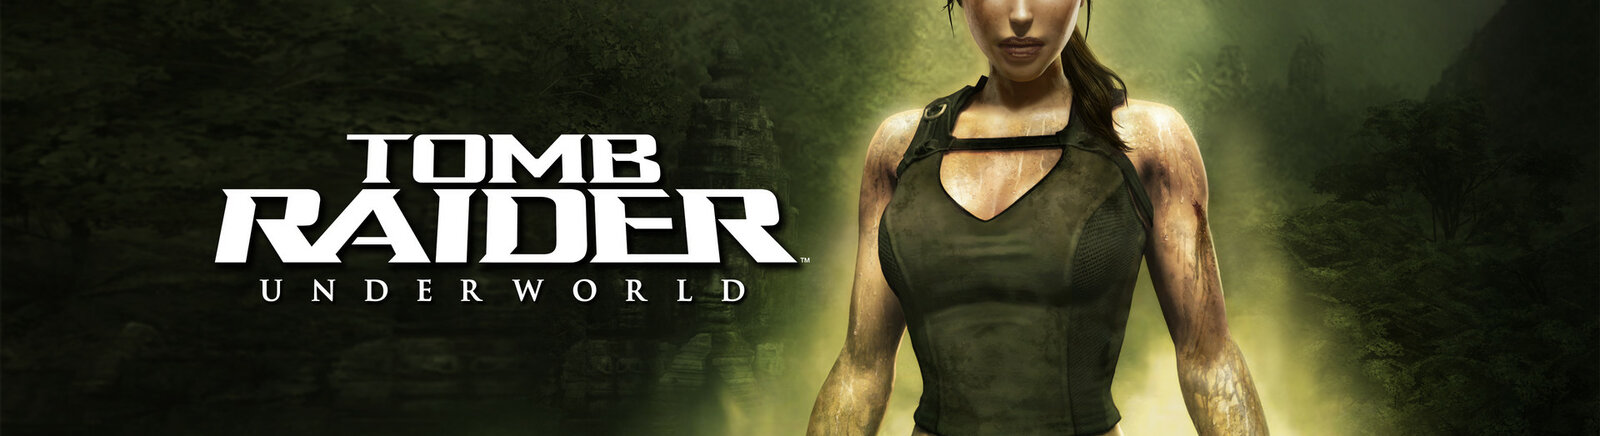 Игры, похожие на Tomb Raider: Underworld - похожие